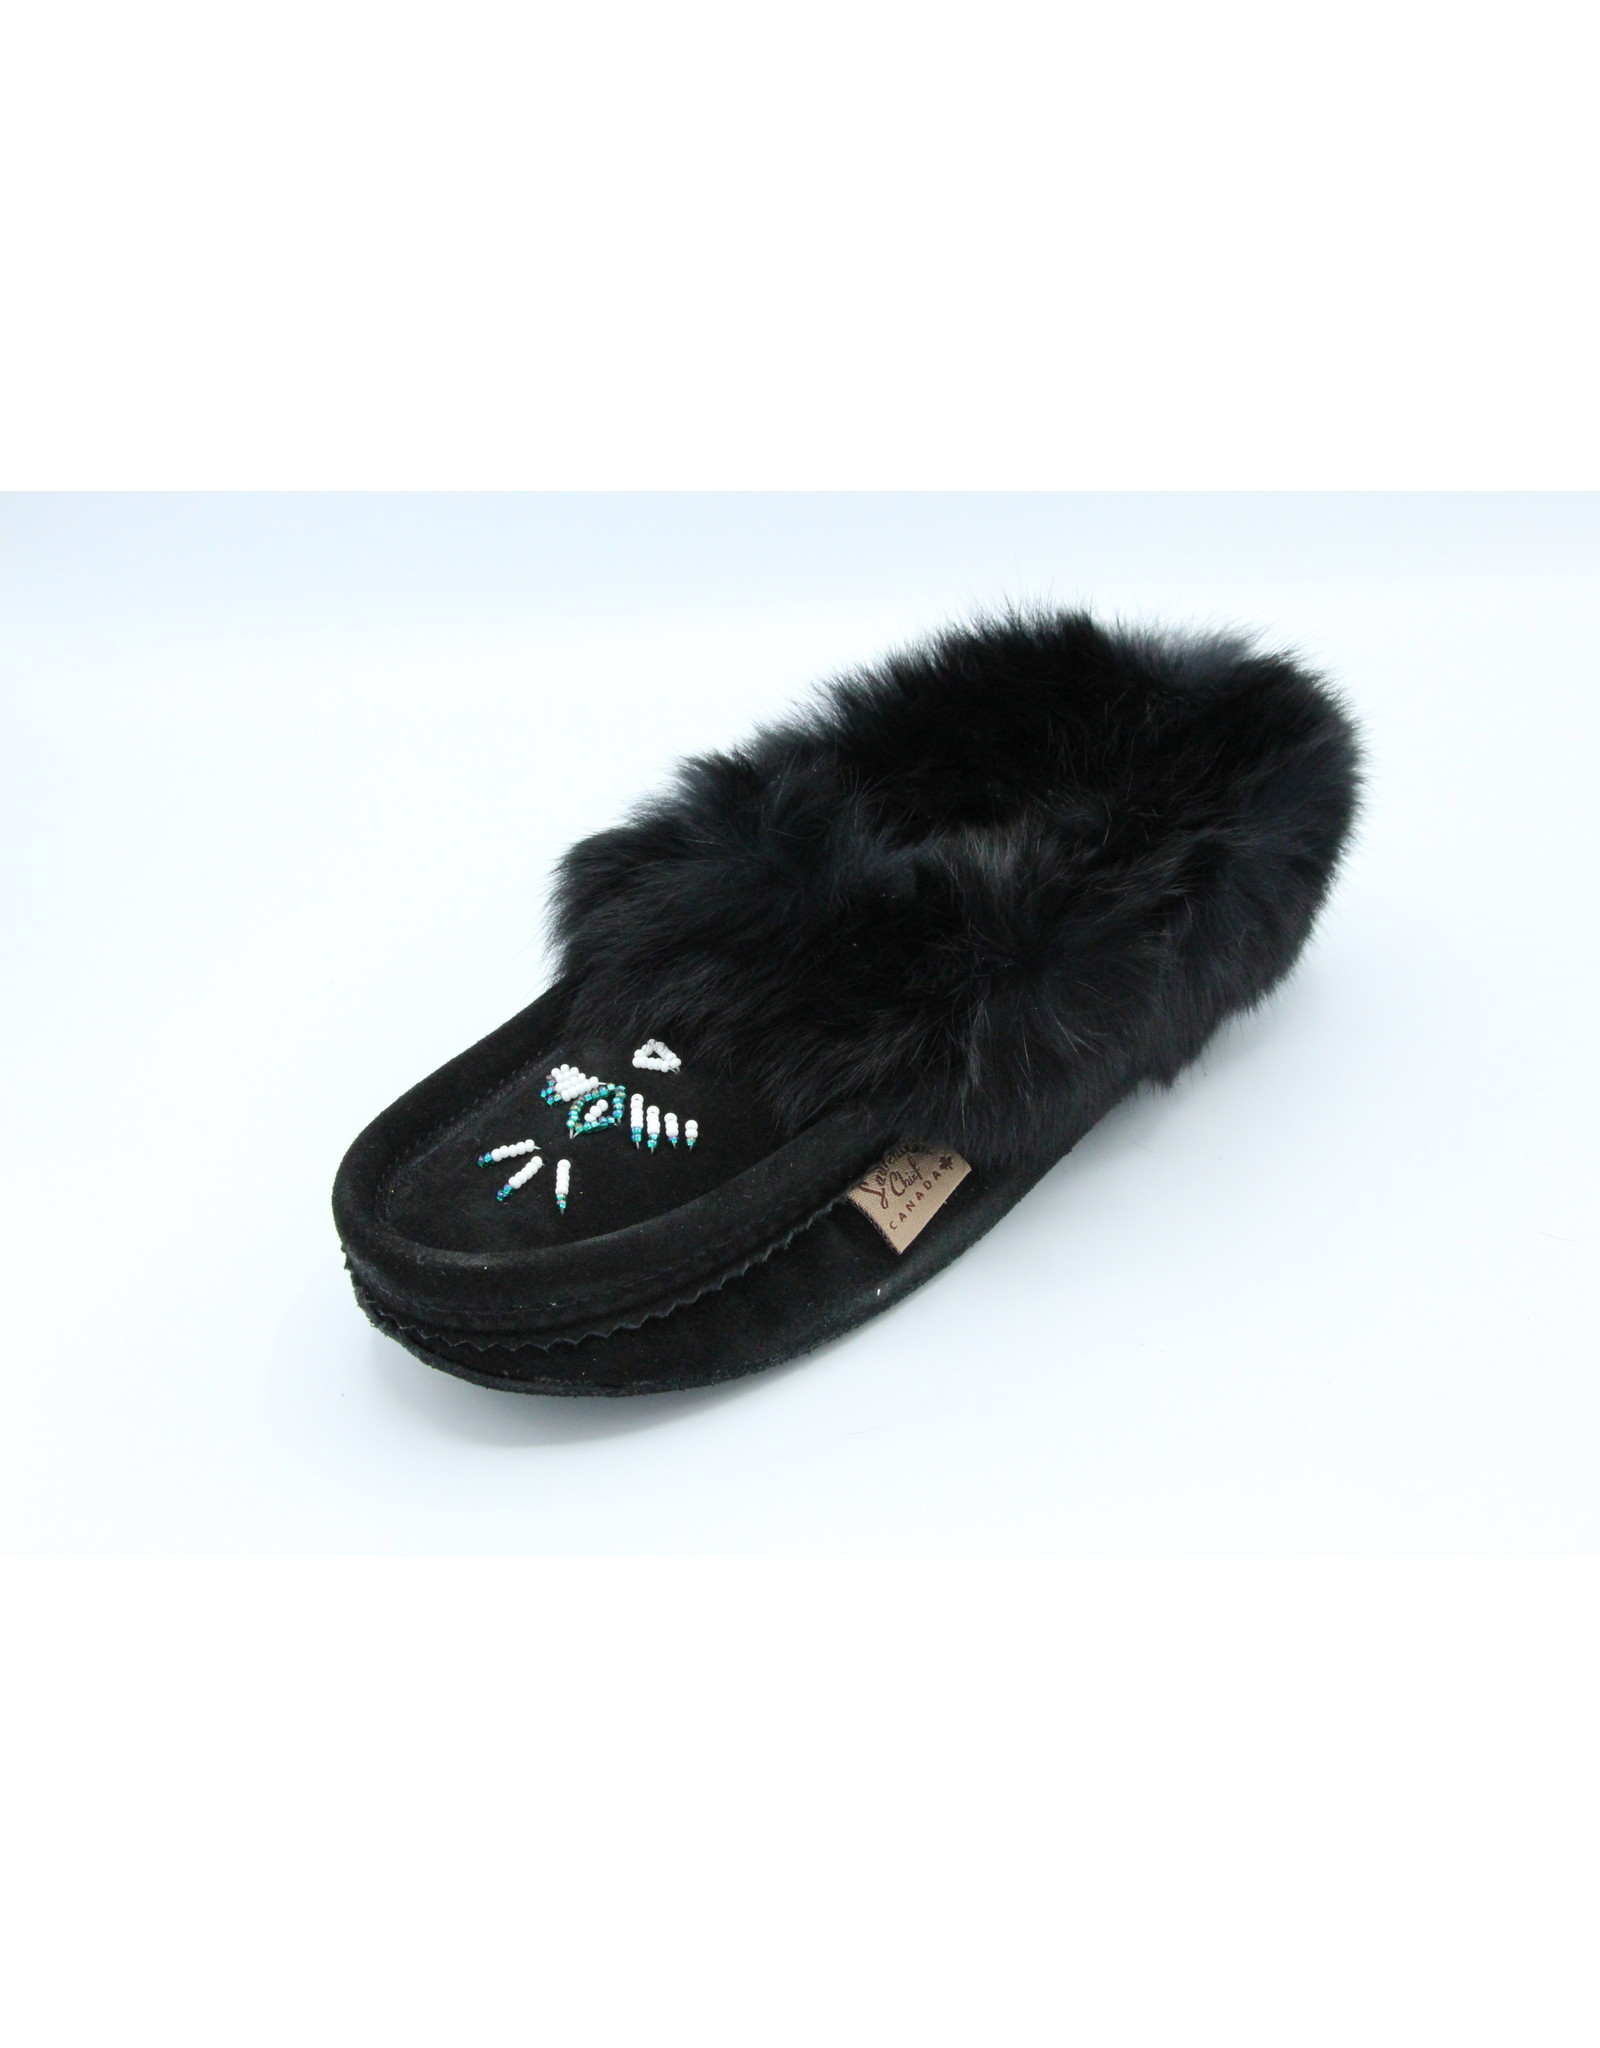 Black Suede Fur Slipper Moccasin - 653L - La Boutique Boréale